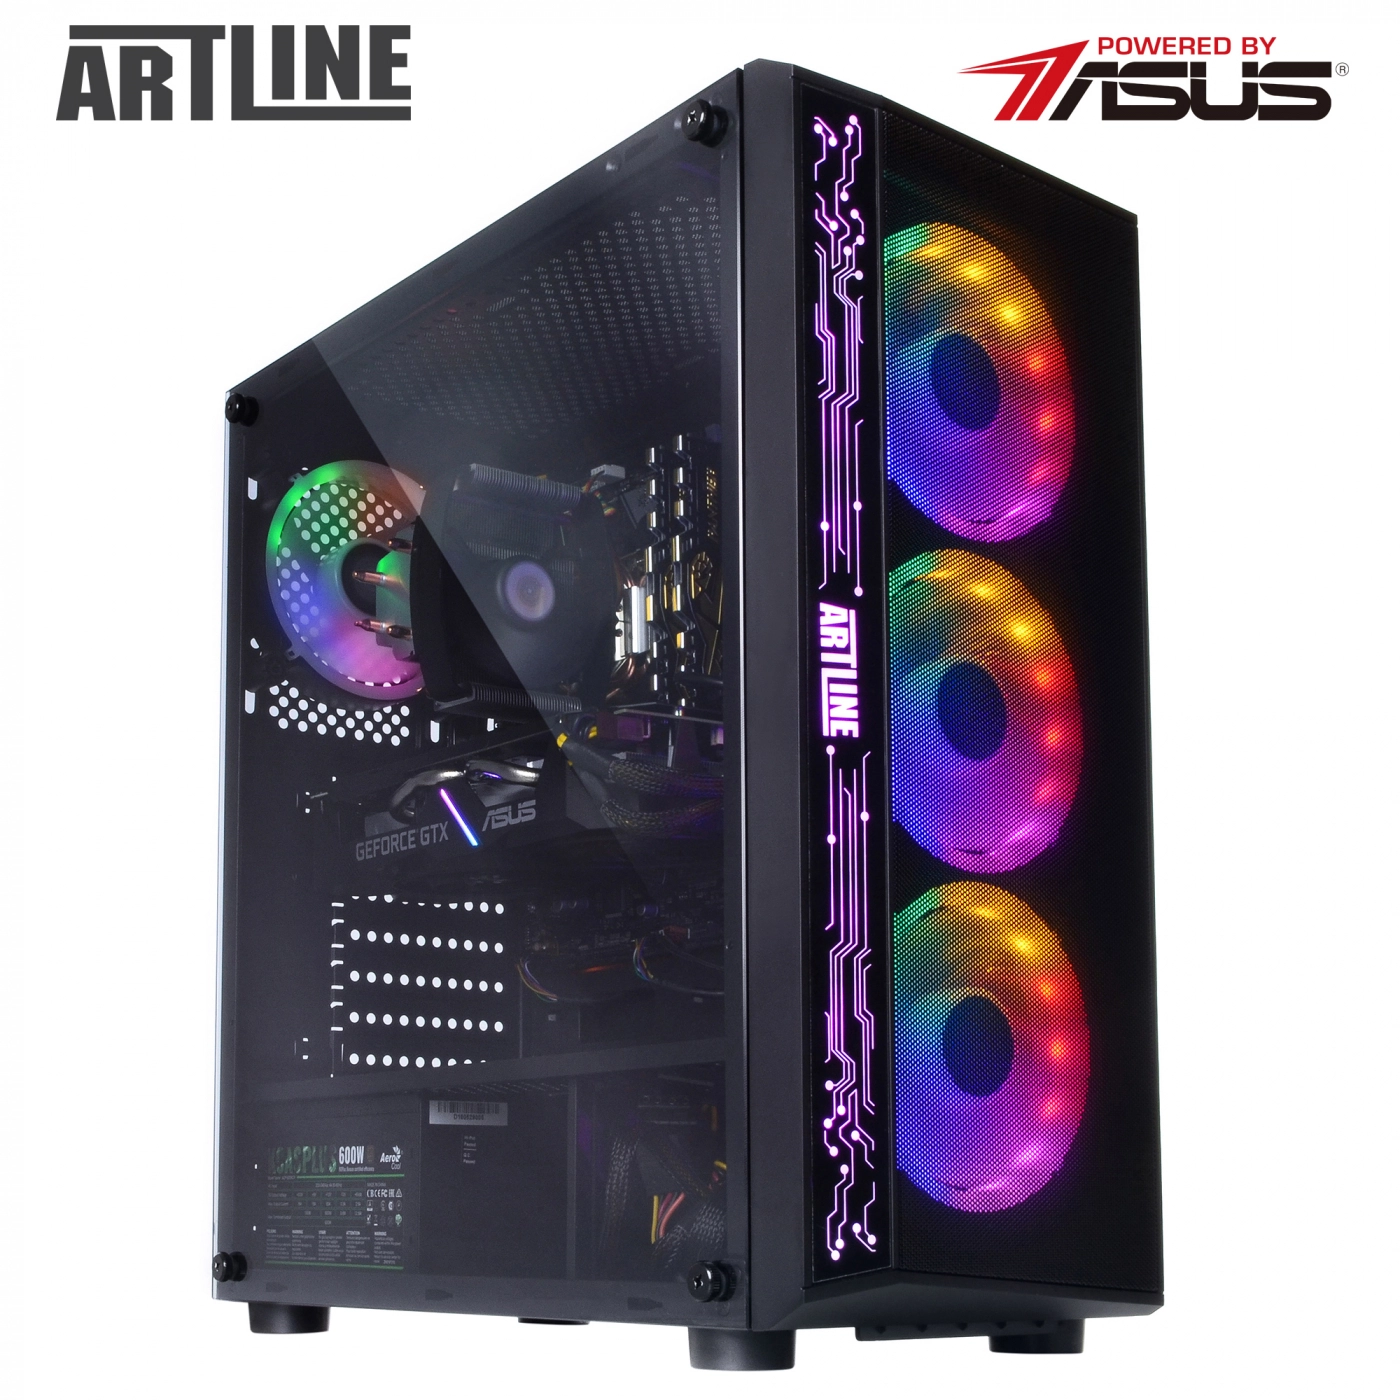 Купить Компьютер ARTLINE Gaming X35v35 - фото 11